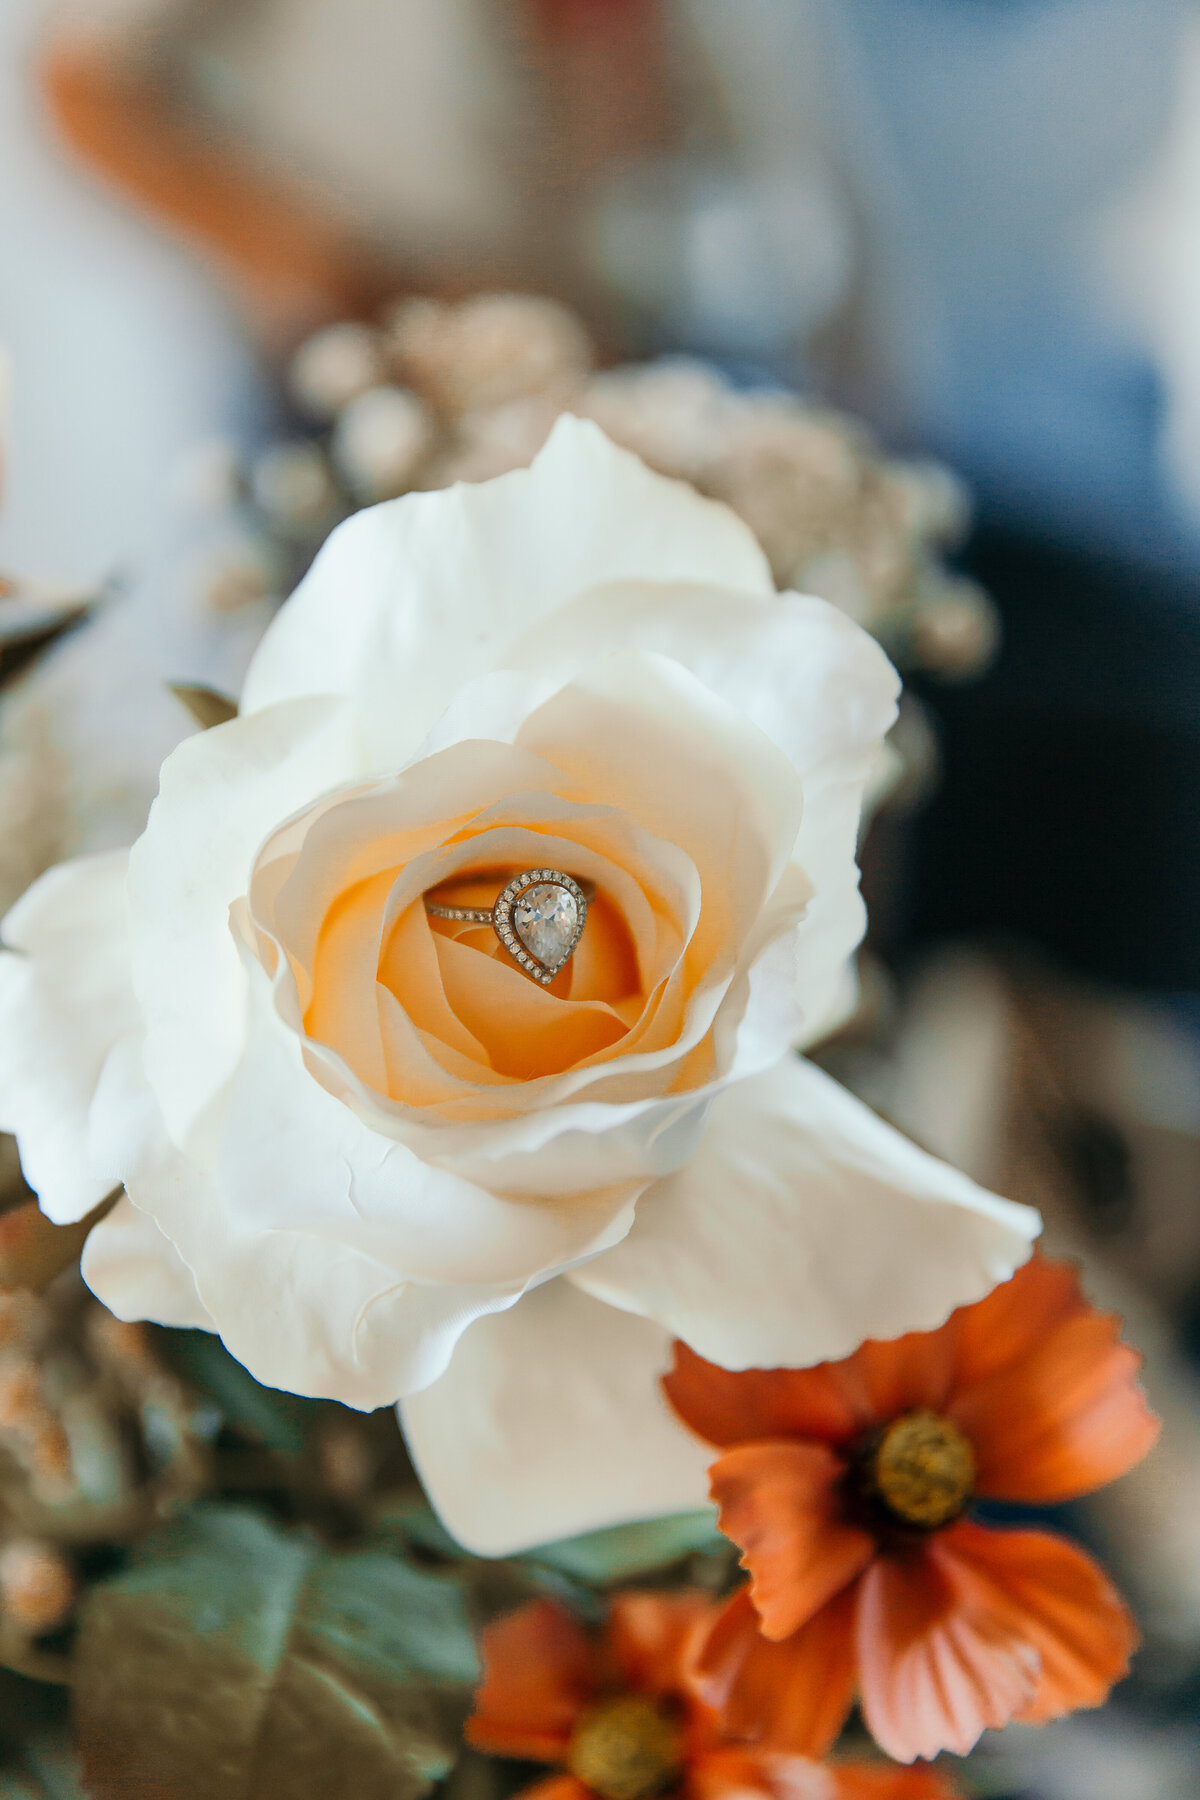 engagement ring inside white rose